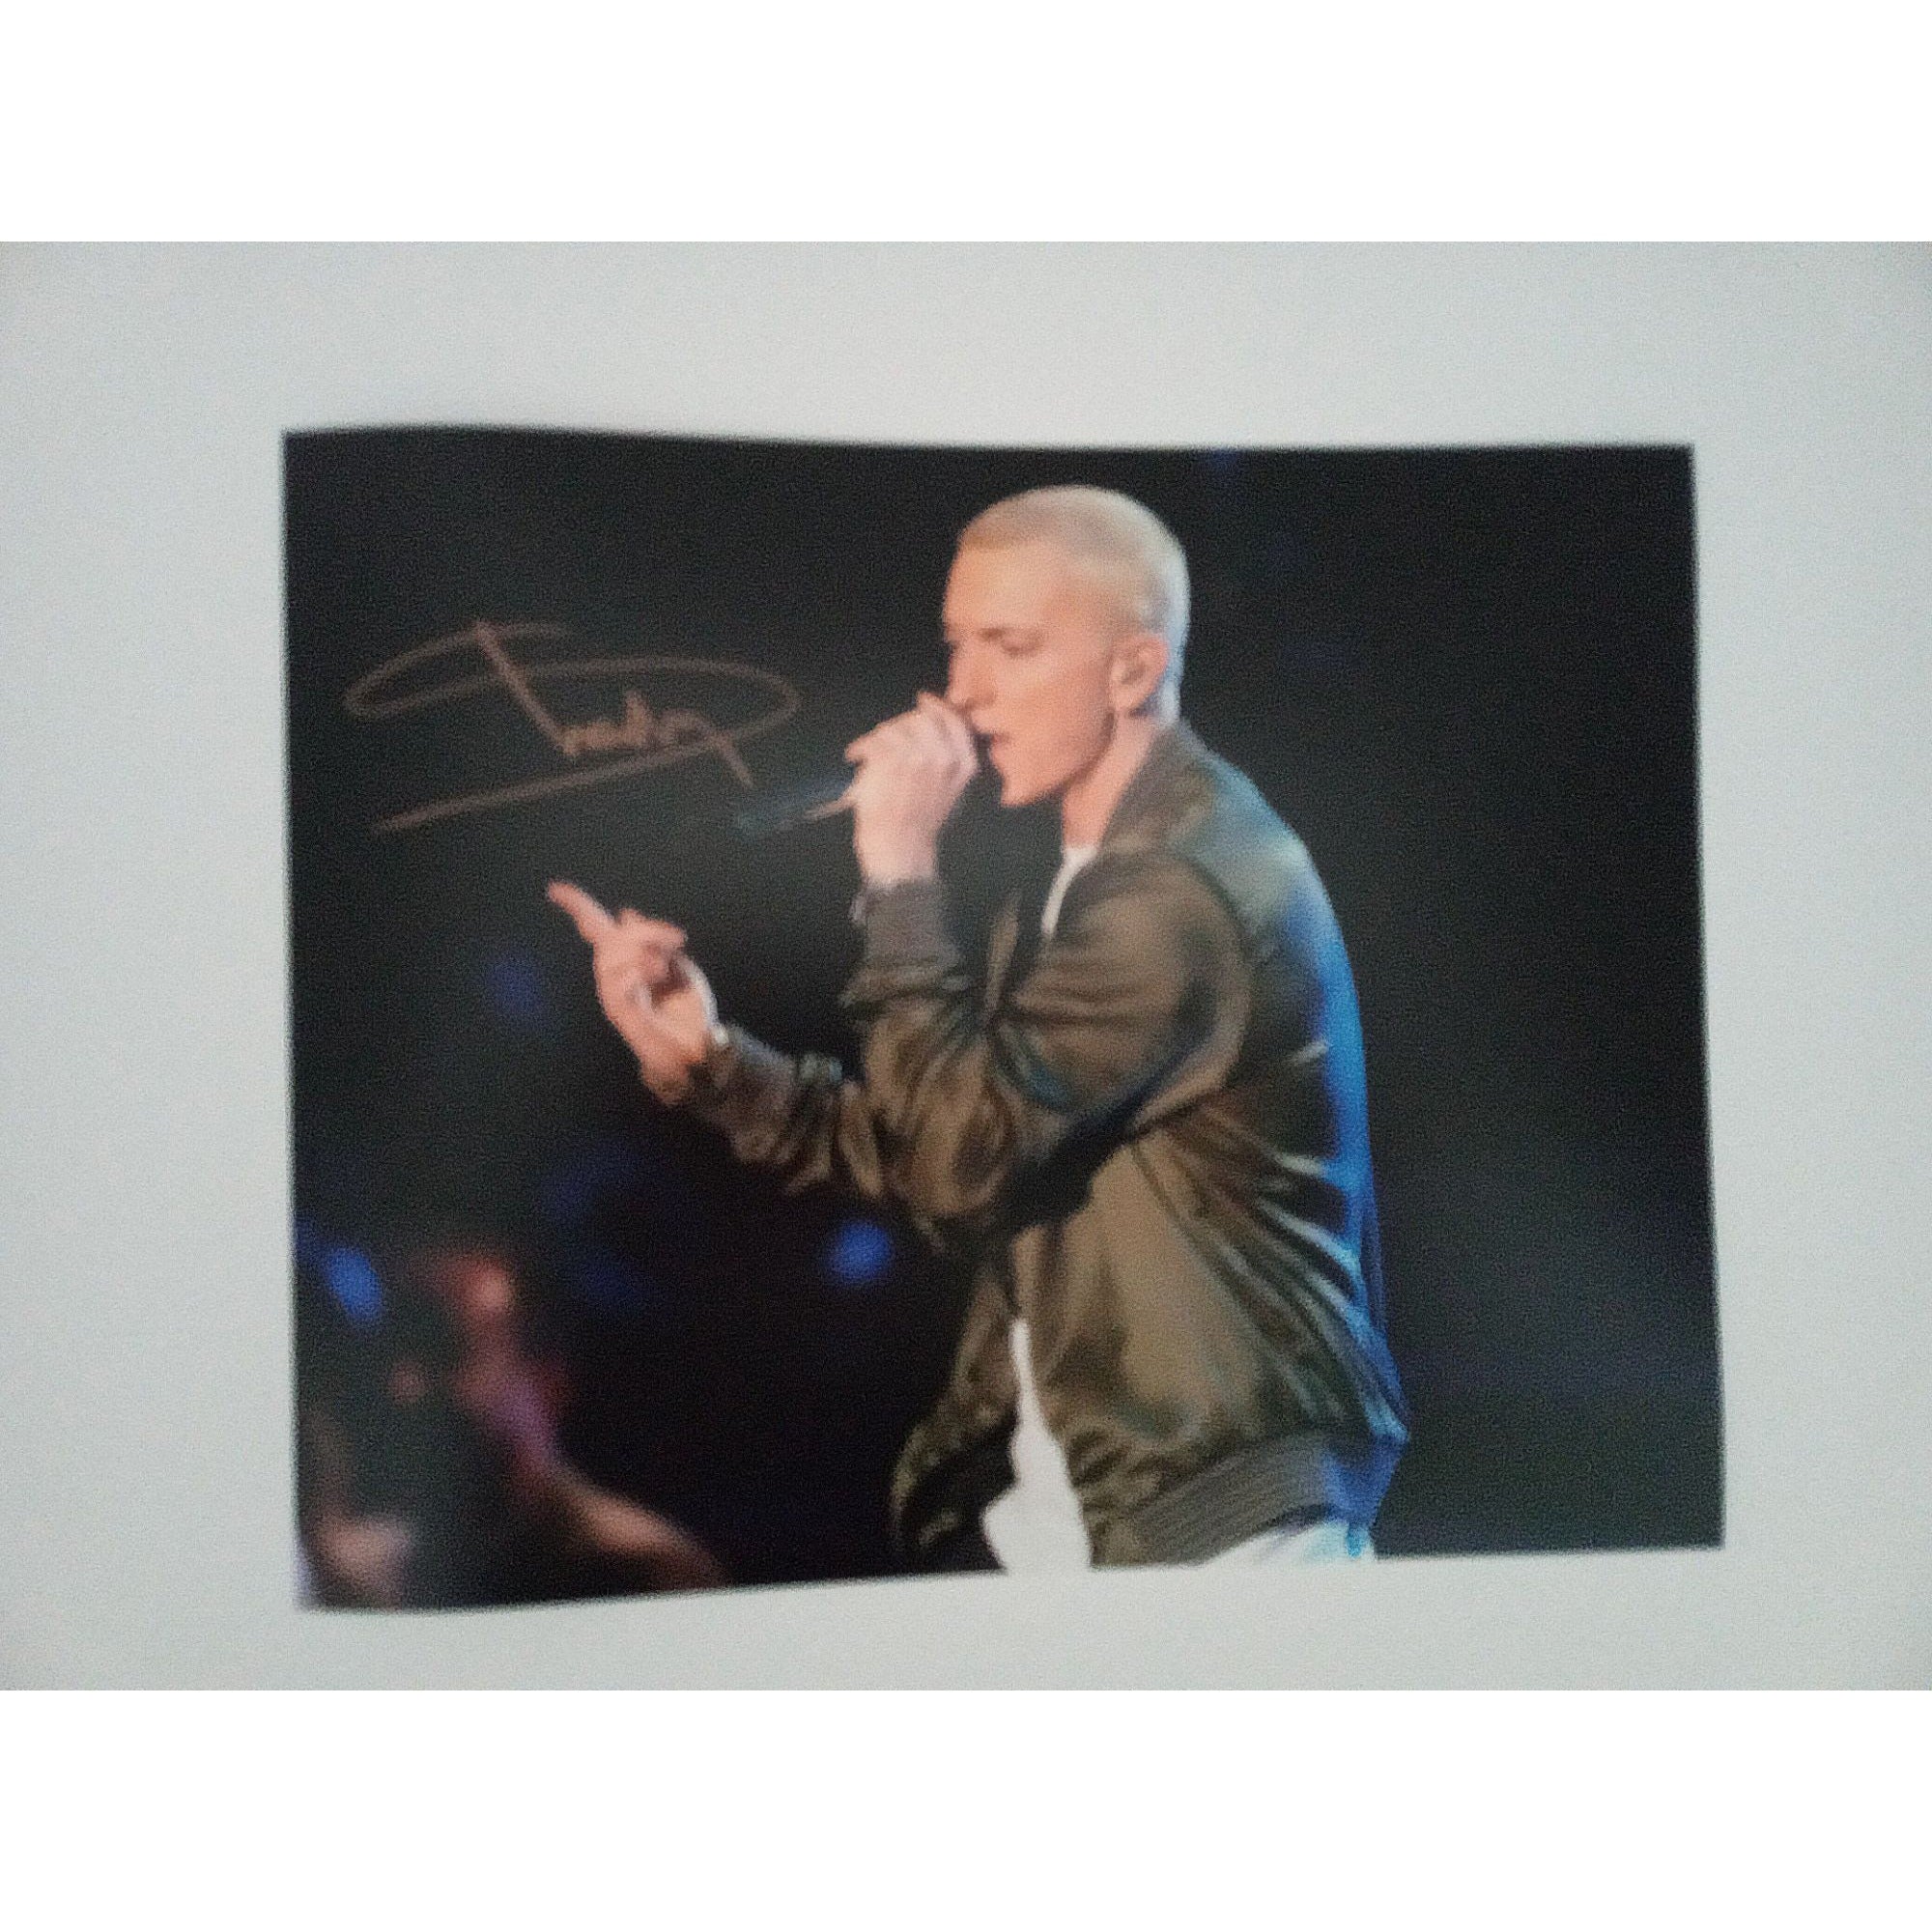 Eminem Marshall Mathers Slim Shady 8 x 10 signed photo with proof